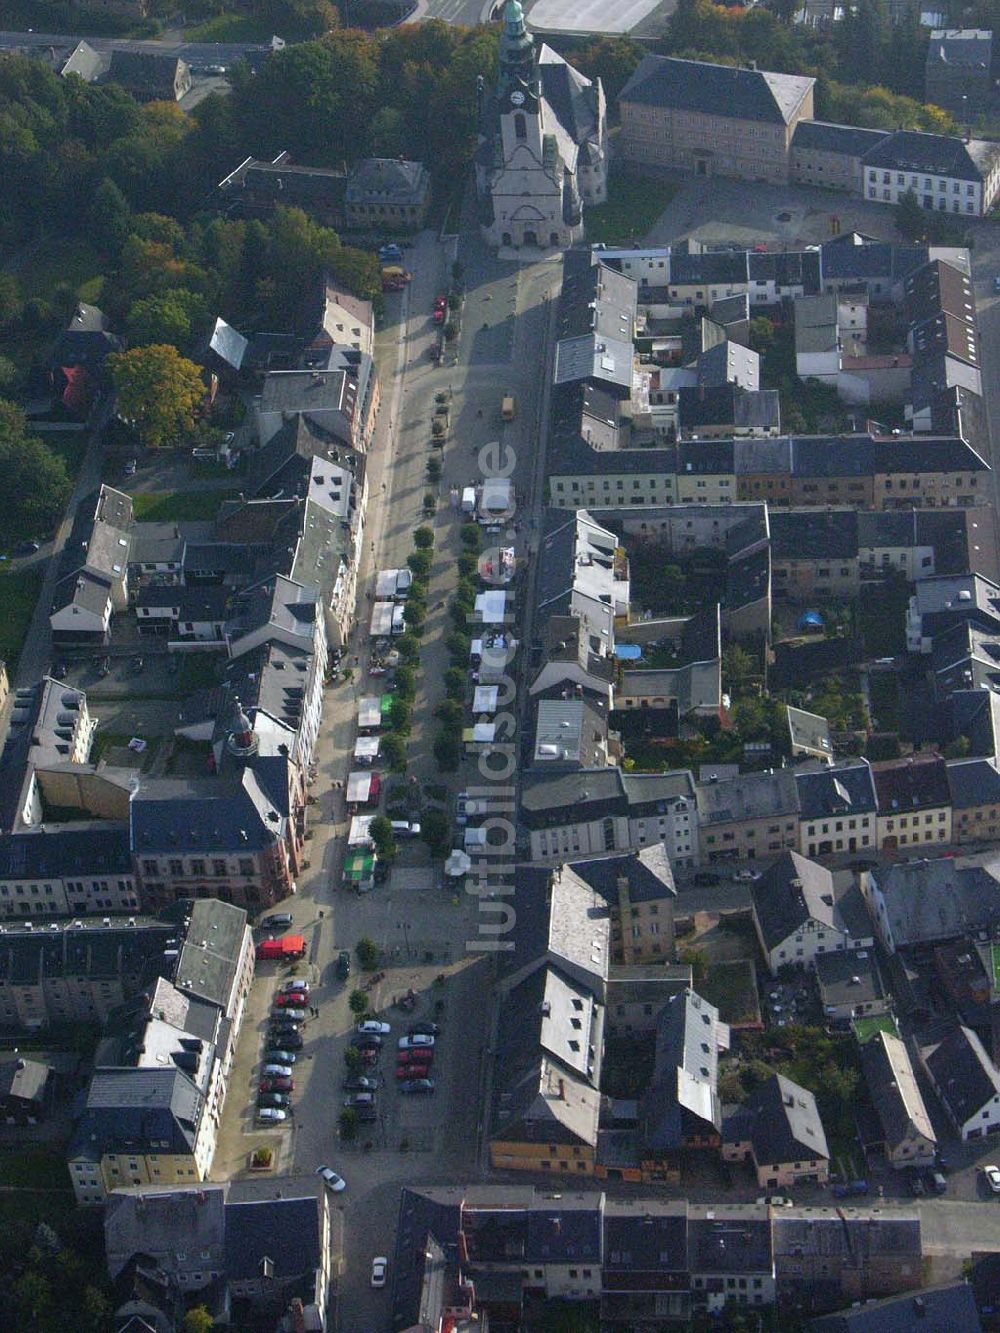 Luftaufnahme Markneukirchen - Blick auf das Stadtzentrum von Markneukirchen